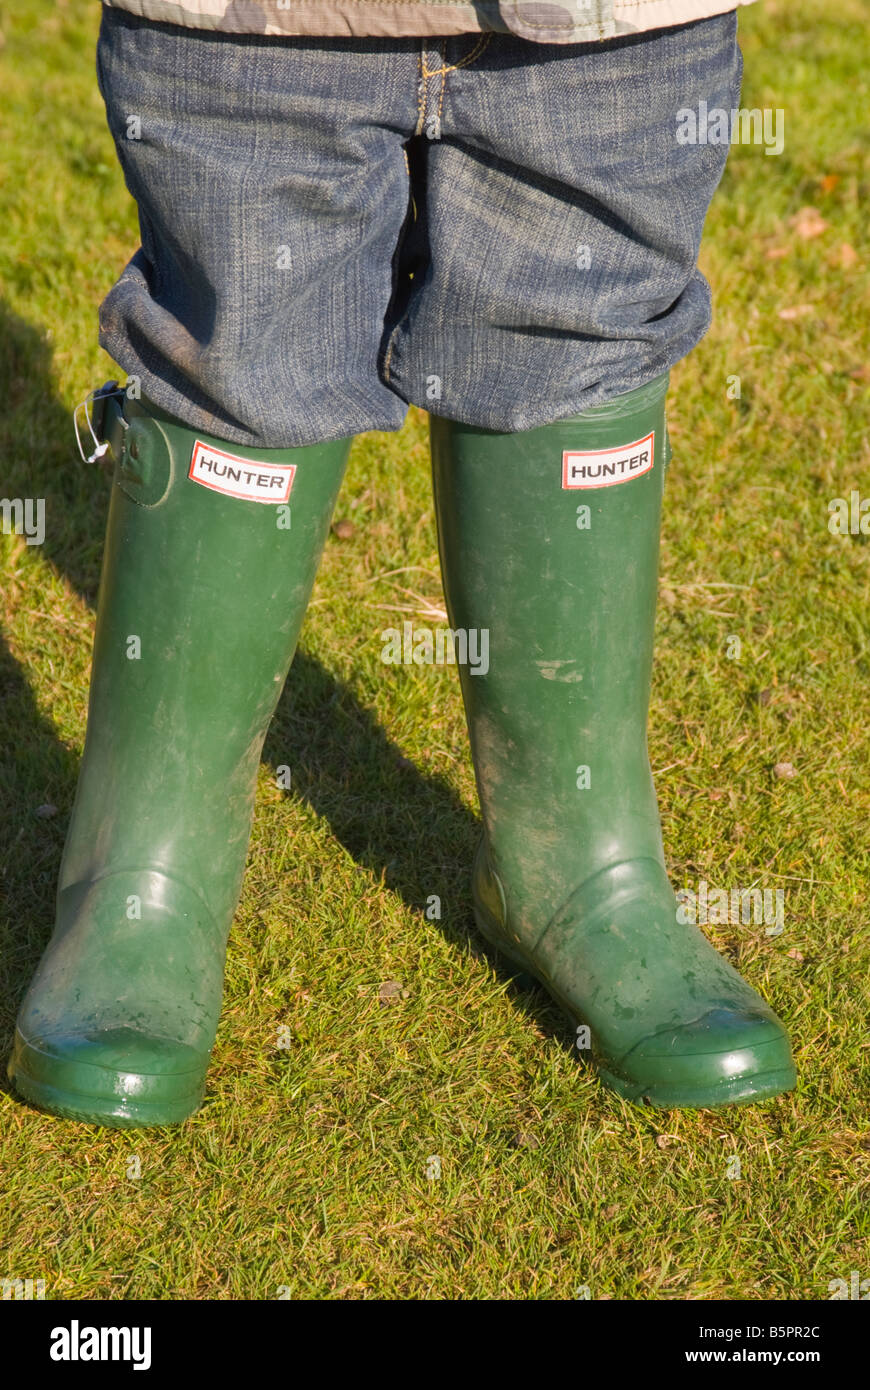 Childrens Child wearing green Hunter bottes wellington de haute qualité (wellies) Banque D'Images